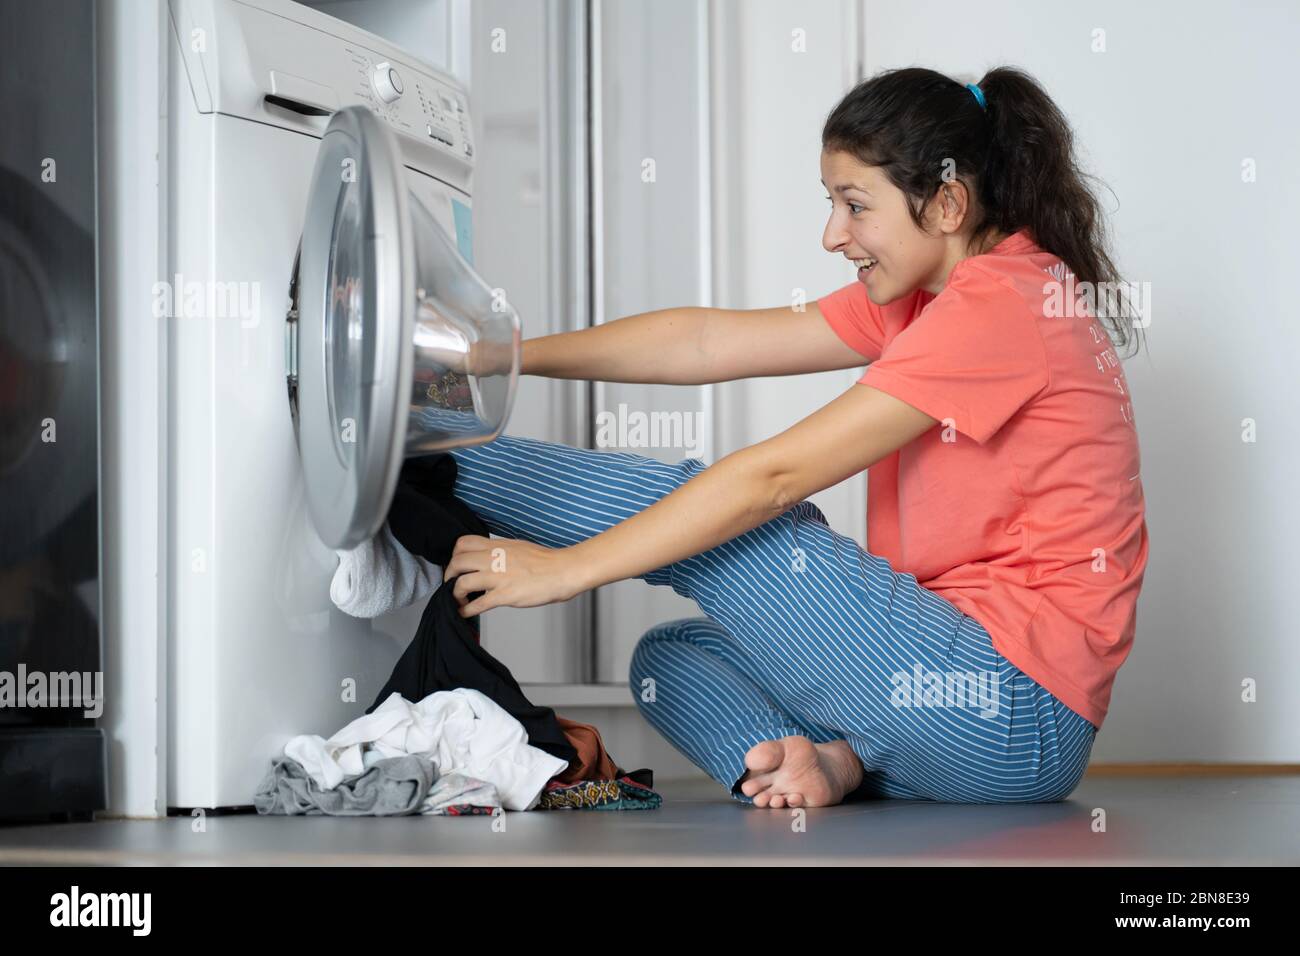 Chica patea ropa sucia en la lavadora. Mucha ropa sucia que no cabe en una  lavadora. Día de lavandería, tareas domésticas Fotografía de stock - Alamy